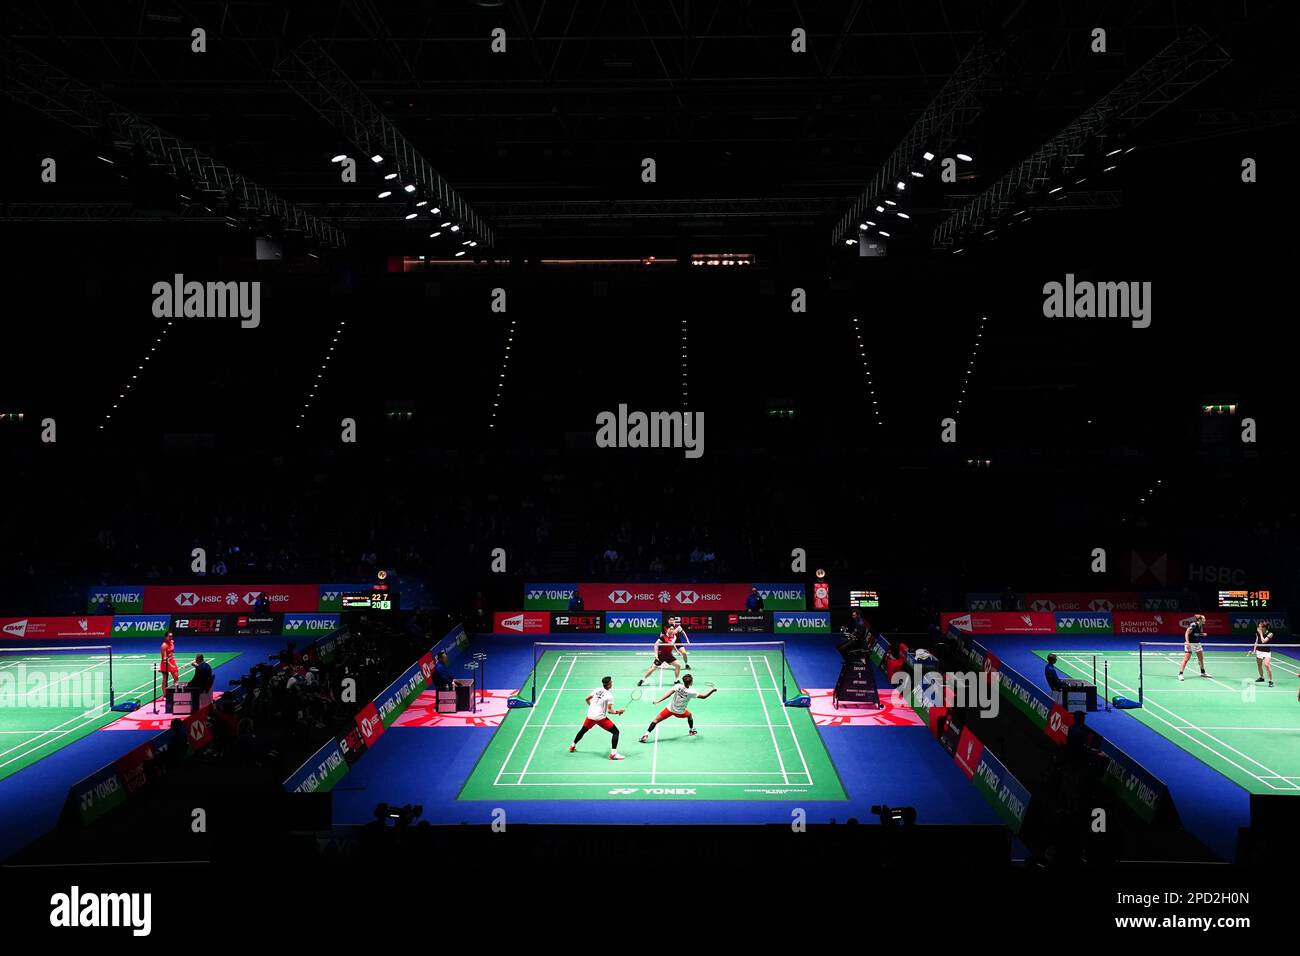 Une vue générale du jeu pendant le premier jour des Championnats de badminton YONEX All England Open à l'Utilita Arena Birmingham. Date de la photo: Mardi 14 mars 2023. Banque D'Images